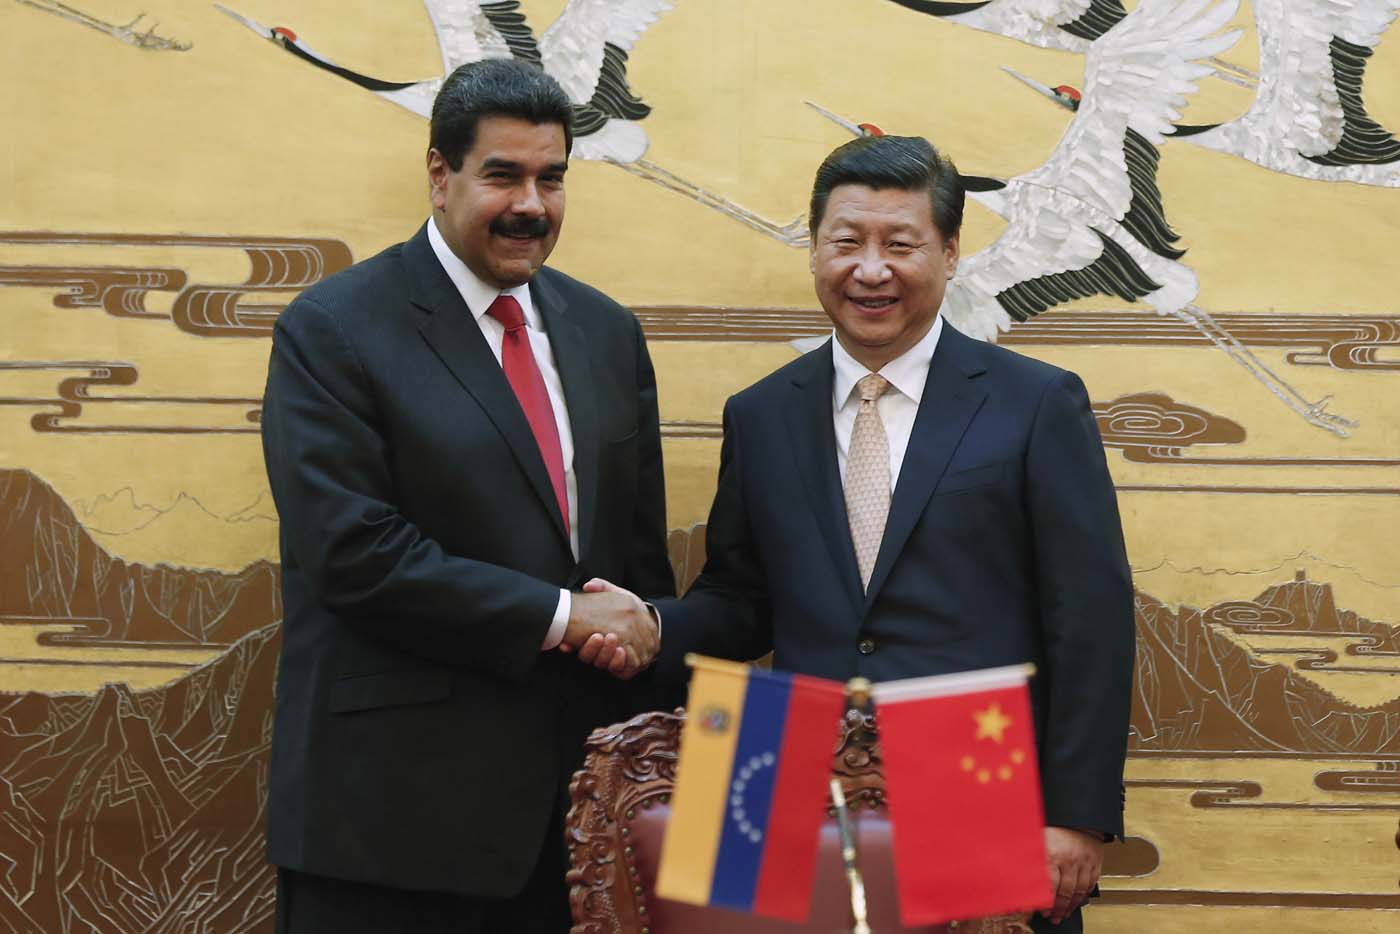 Alianza China-Venezuela se basa en la ganancia mutua y no en invasiones o injerencias